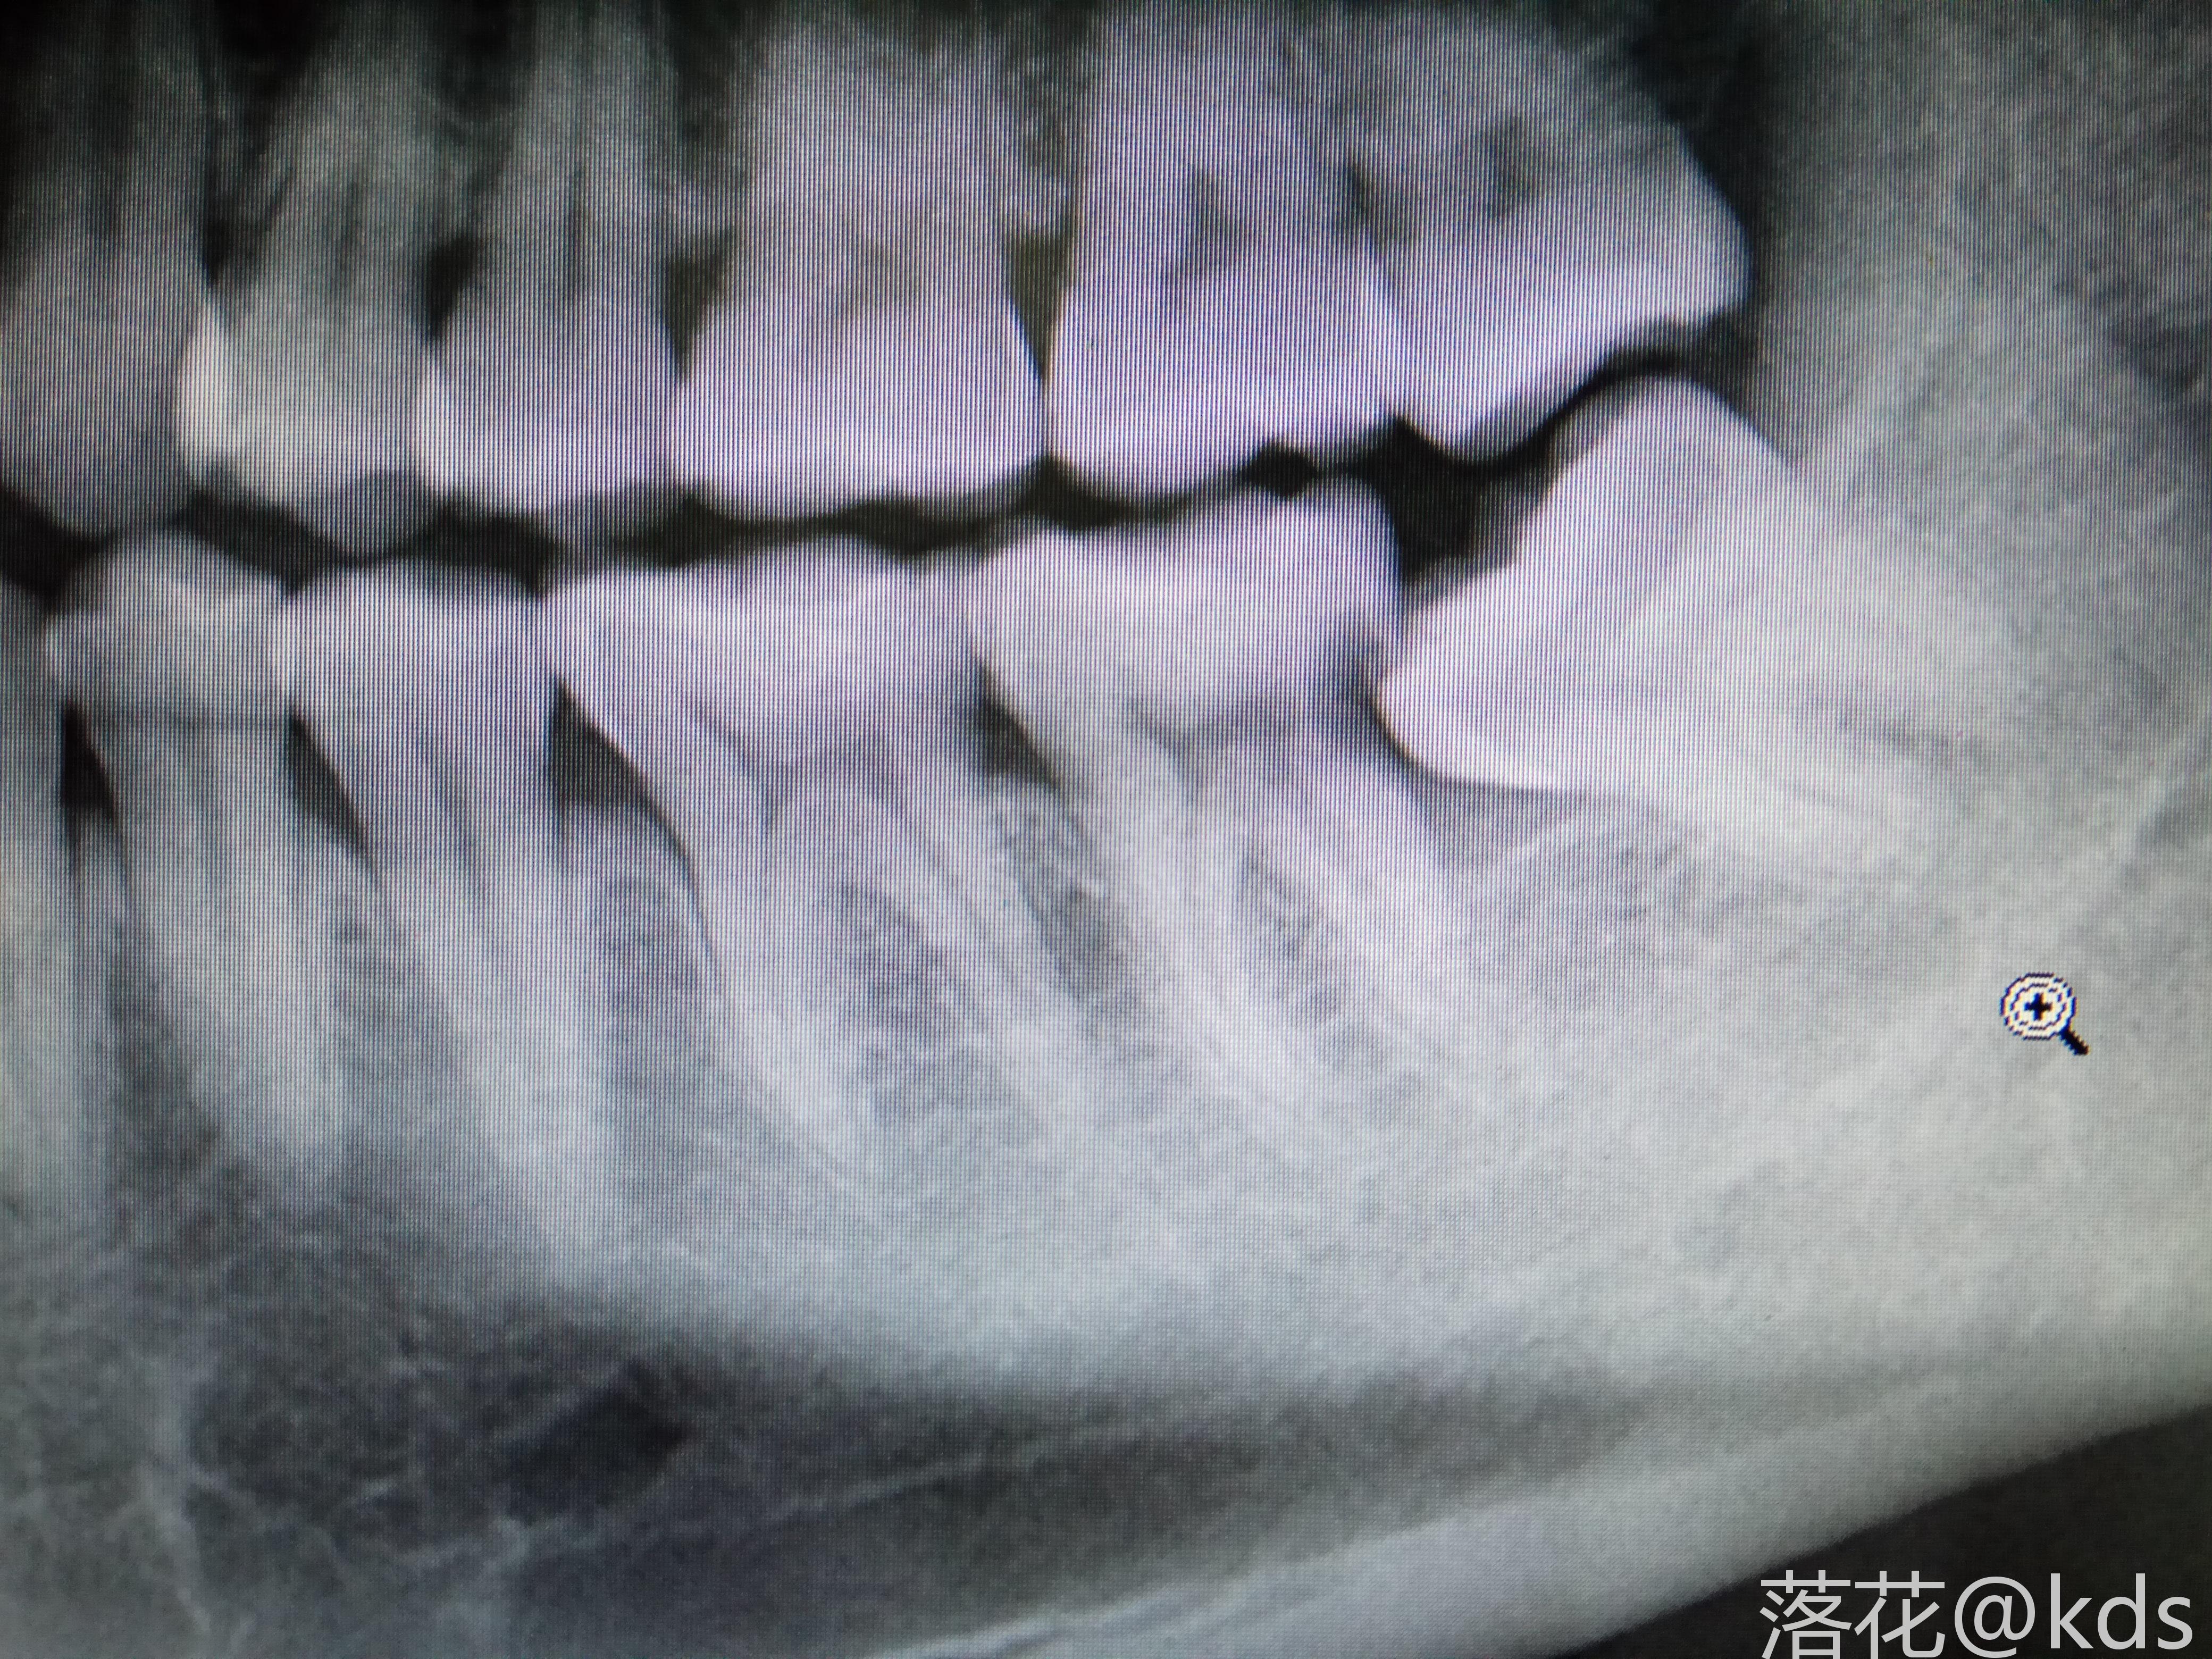 图是拔智齿前的片子,智齿年前已经拔了,现在需要治疗一下旁边的那颗